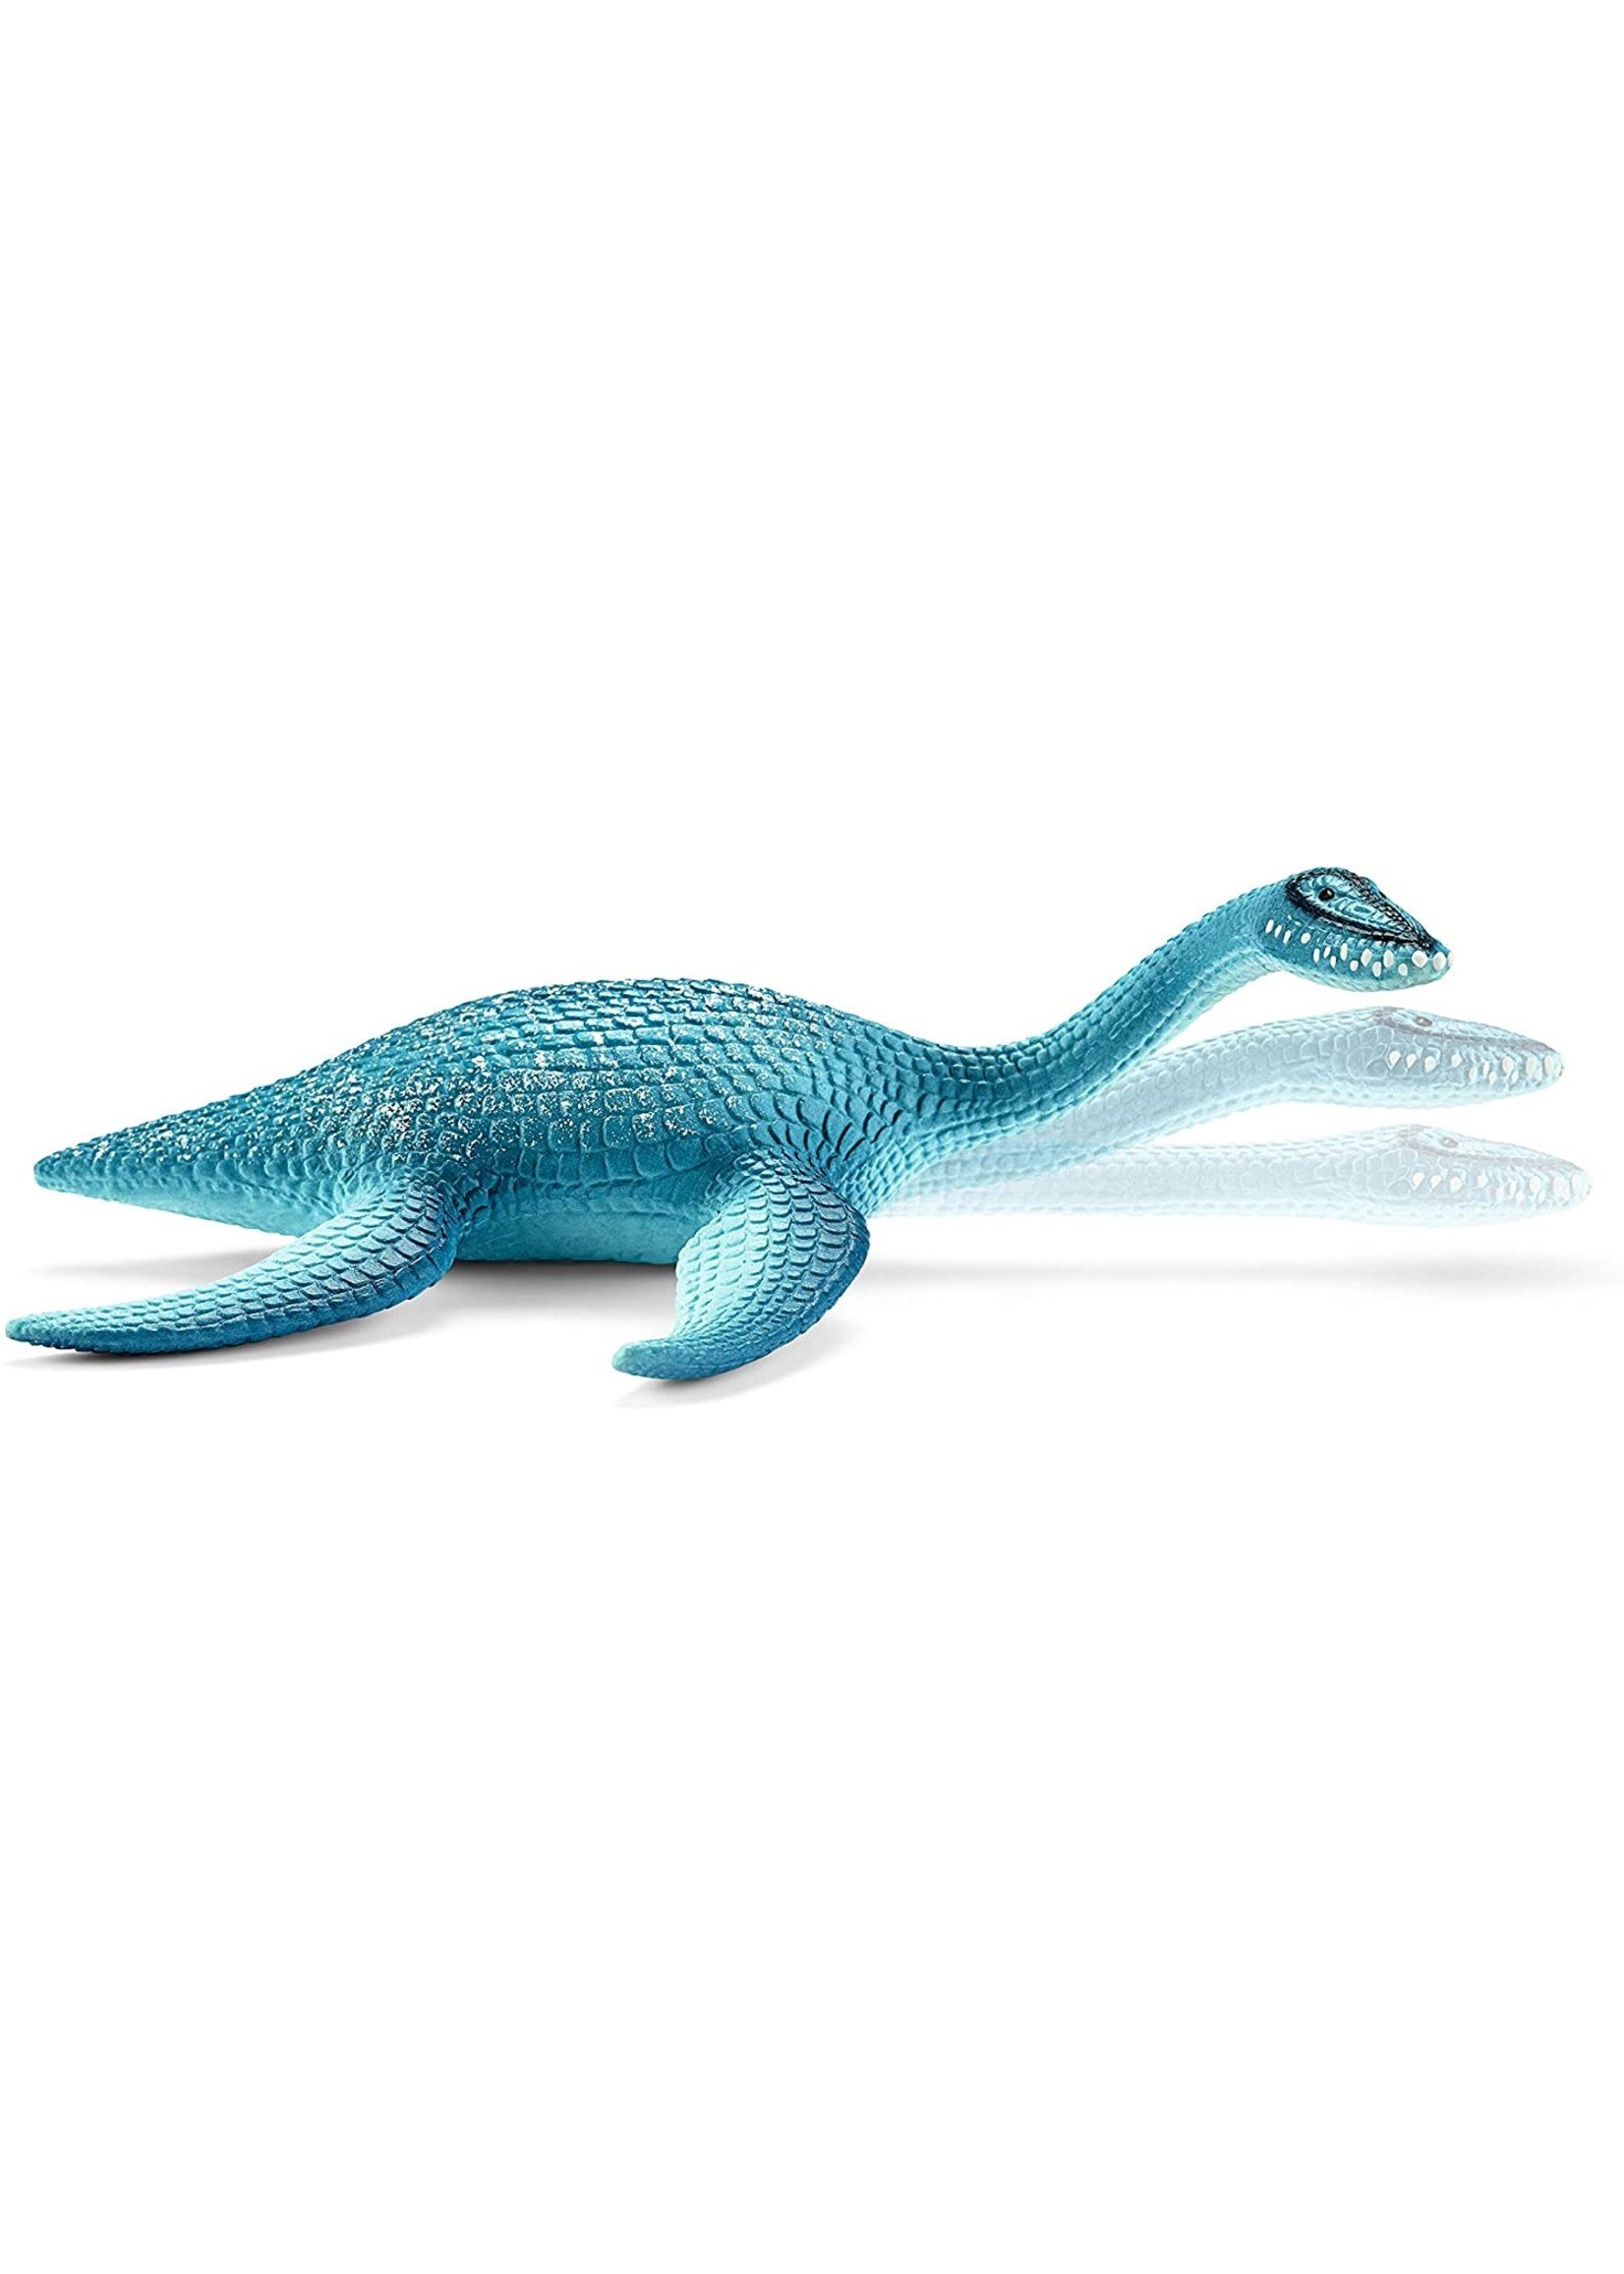 Schleich 15016 - Plesiosaurus